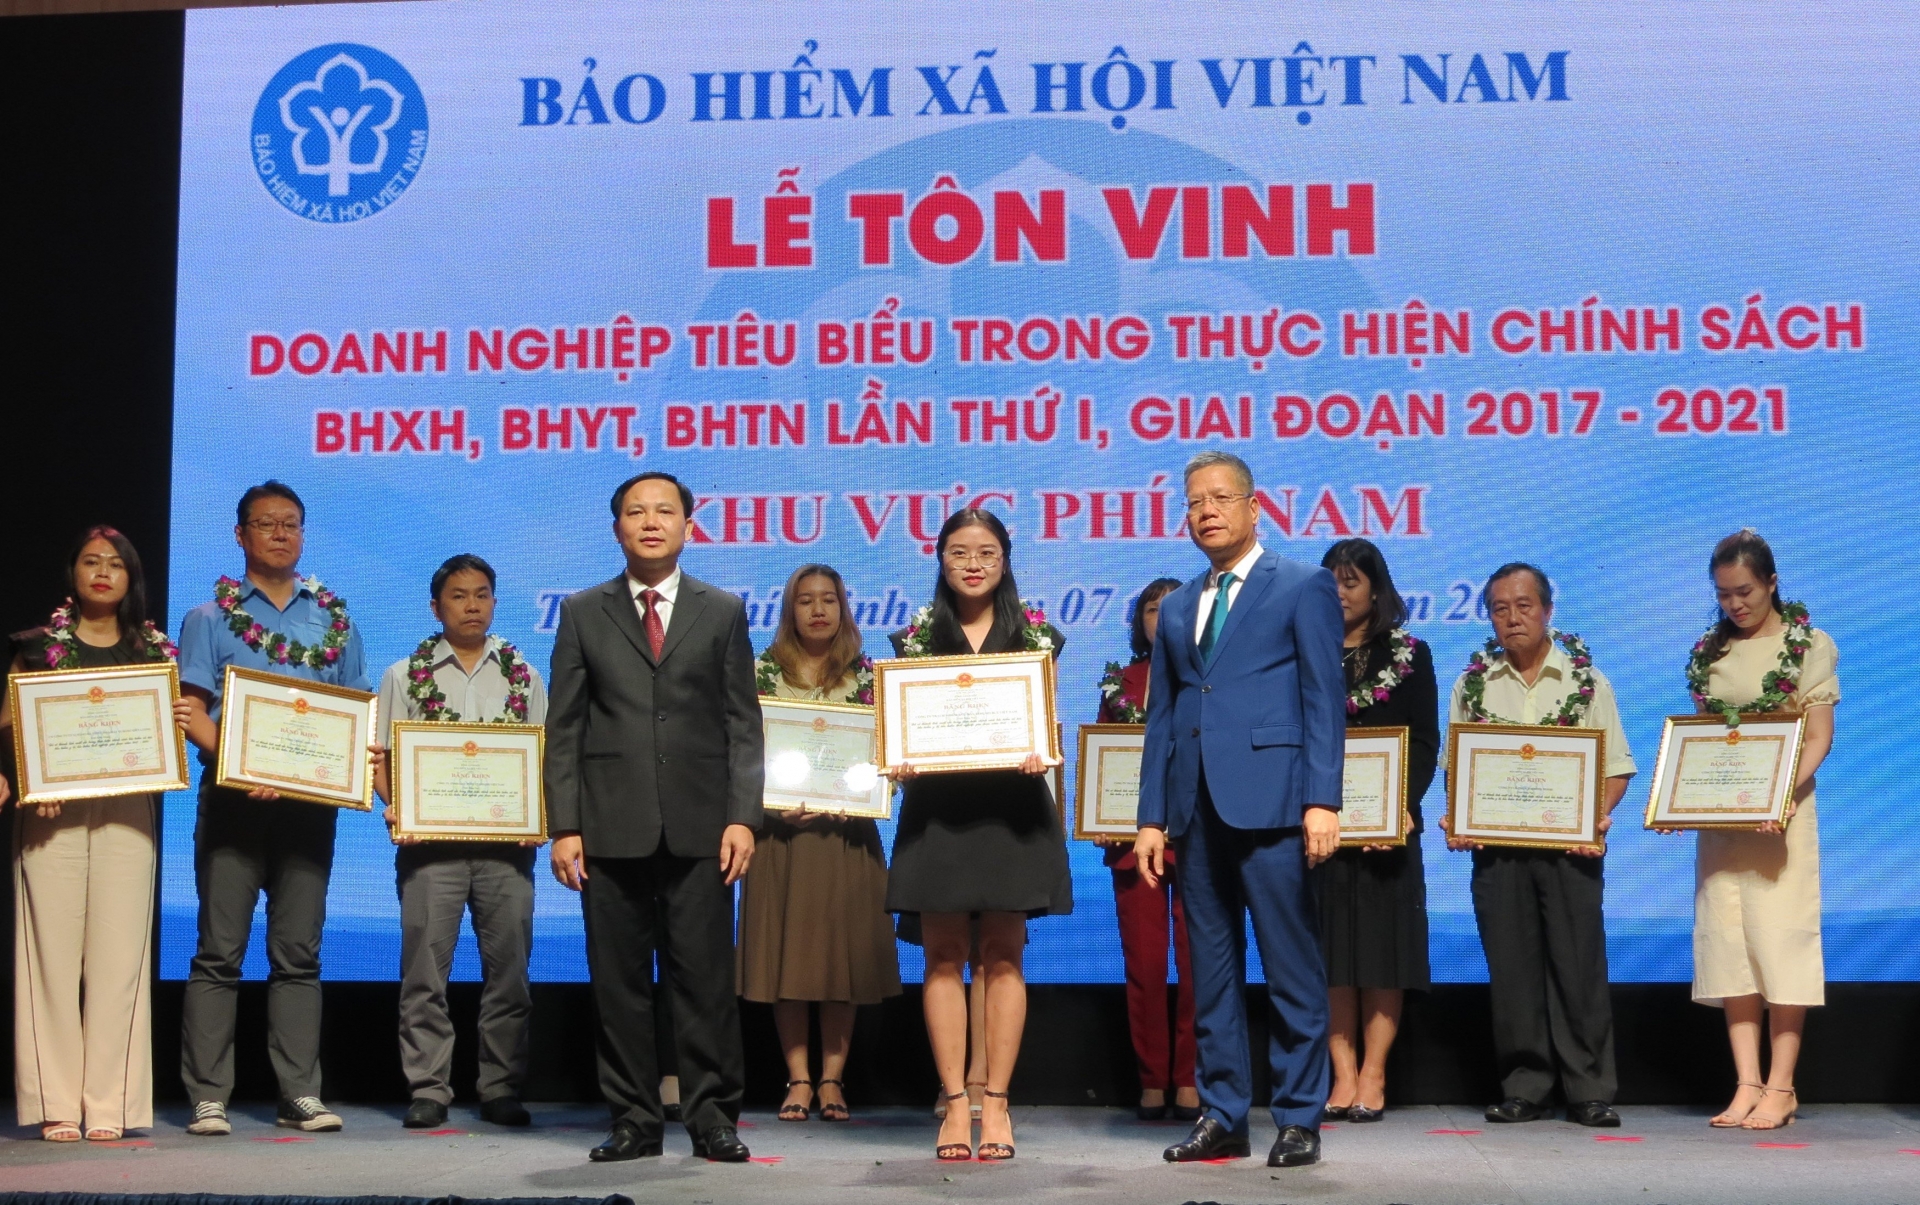 BHXH Việt Nam vinh danh 103 doanh nghiệp tiêu biểu phía Nam trong thực hiện chính sách BHXH, BHYT